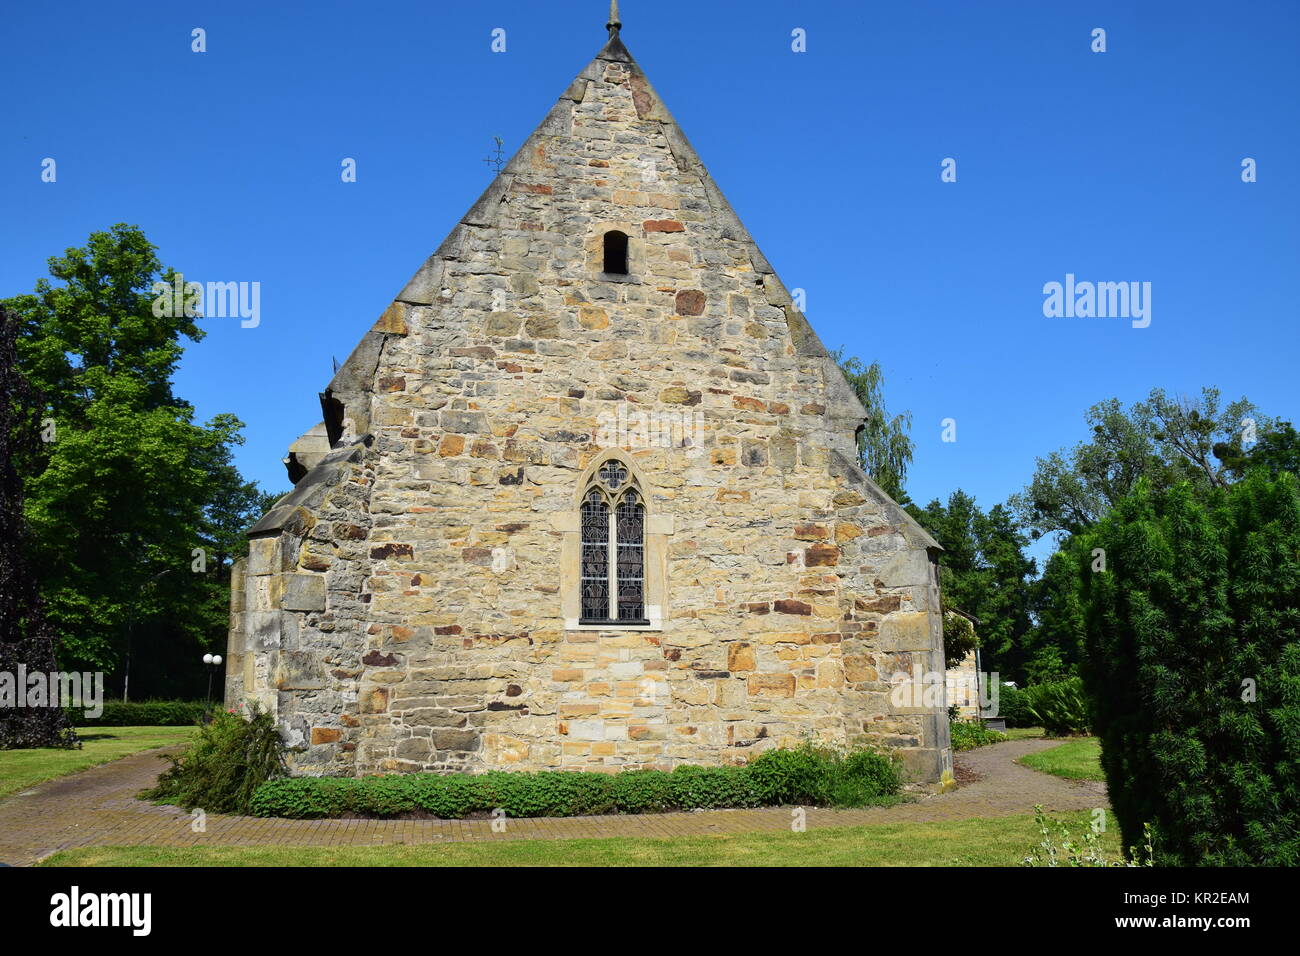 village church in probsthagen Stock Photo